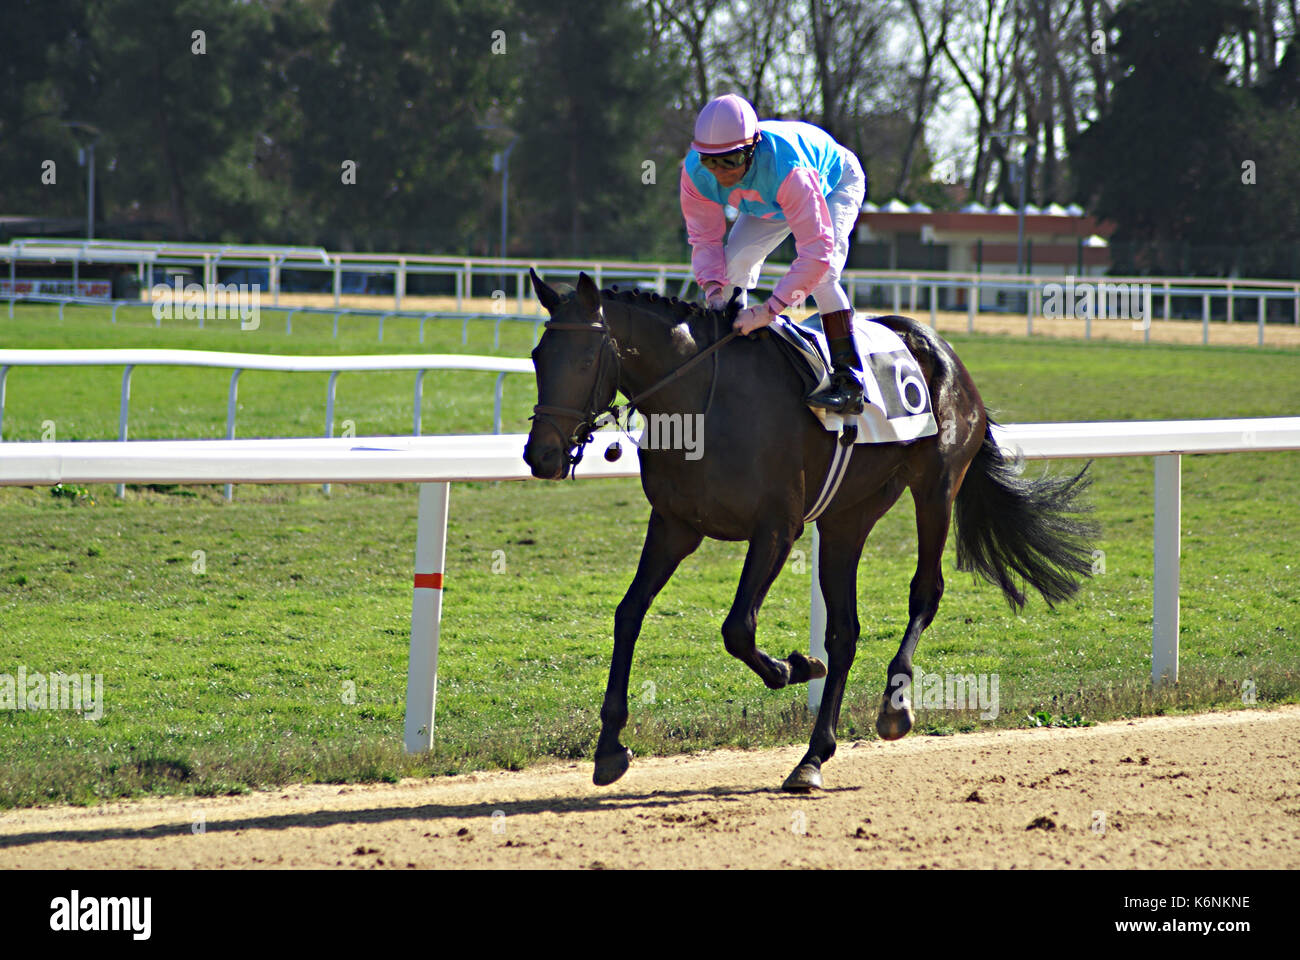 Jockey en blouse rose et bleu avant la course Banque D'Images